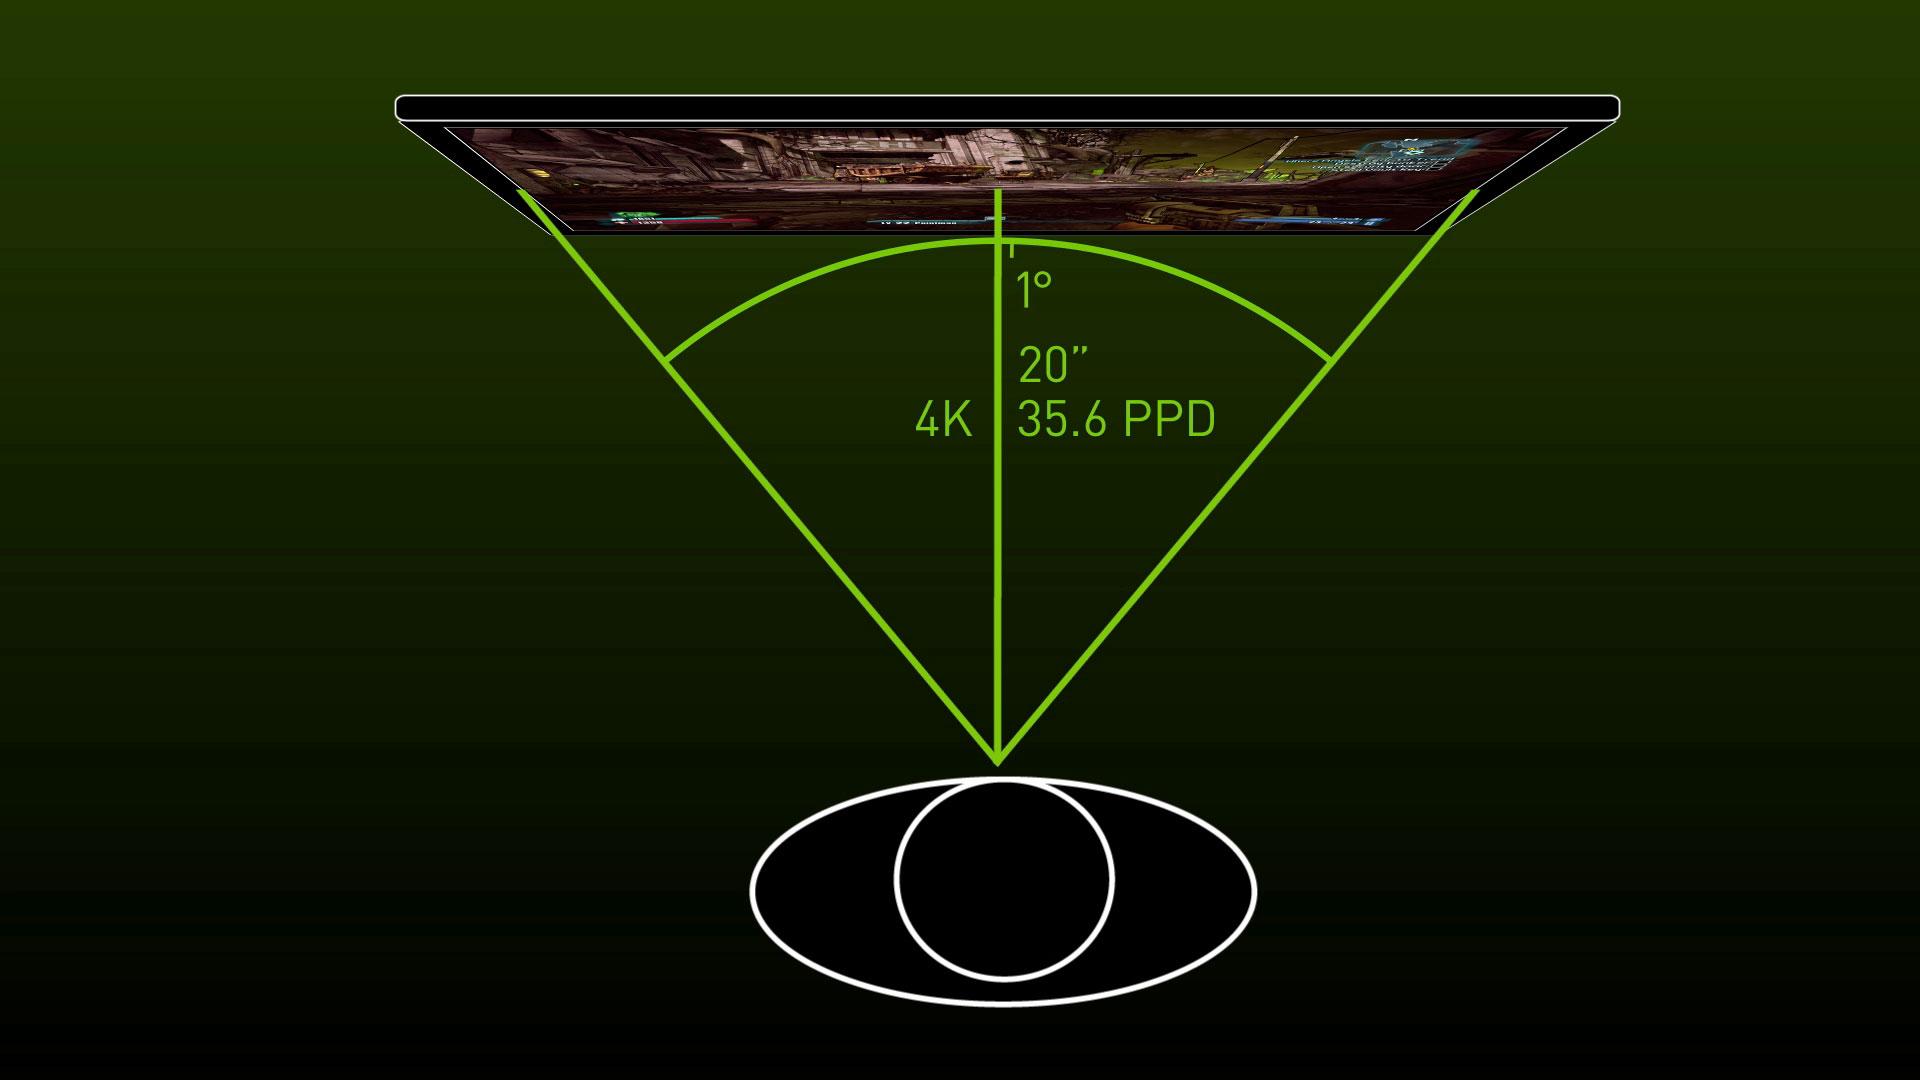 Slik forklarer Nvidia pikseltettheten per grad i synsfeltet ditt.